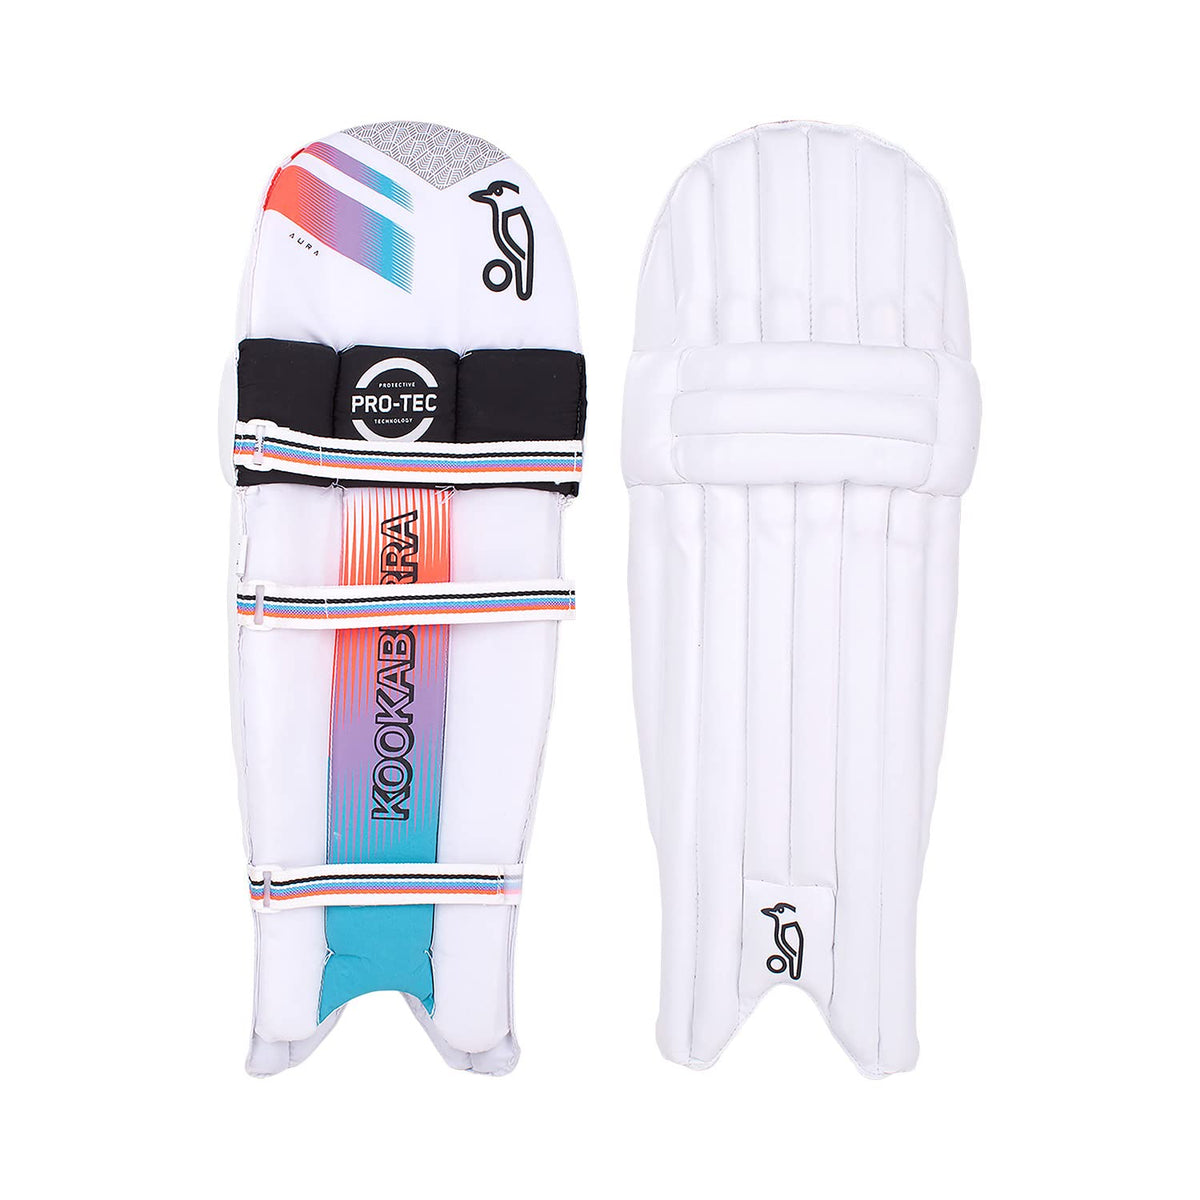 KOOKABURRA Unisex Youth Aura 6.1 Batting cricket pads, White, Extra Small Junior UK